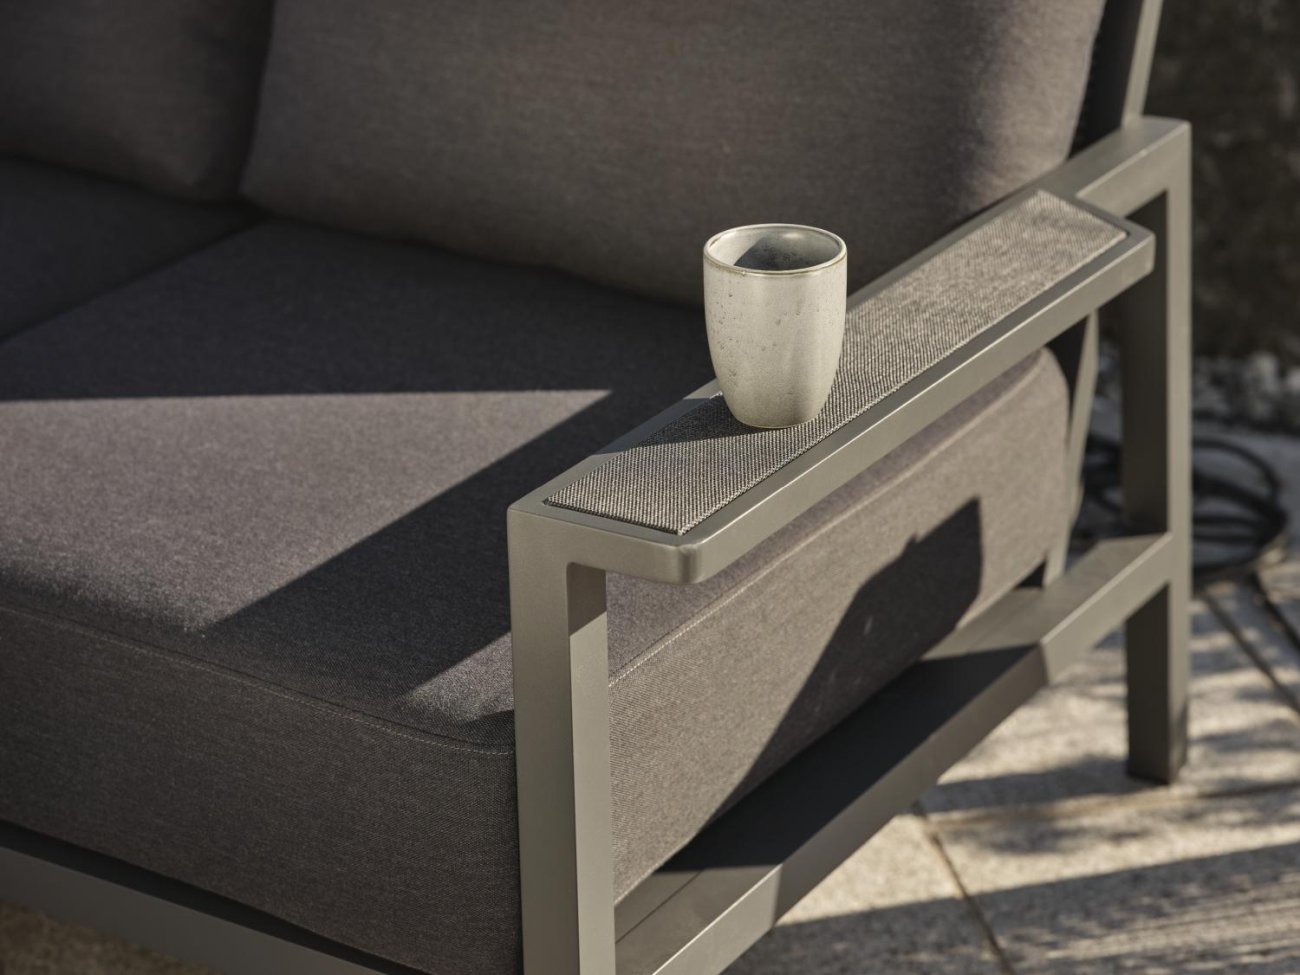 Das Gartenecksofa Skalfort überzeugt mit seinem modernen Design. Gefertigt wurde er aus Stoff, welcher einen Anthrazit Farbton besitzt. Das Gestell ist aus Metall und hat eine Anthrazit. Die Sitzhöhe des Sofas beträgt 42 cm.